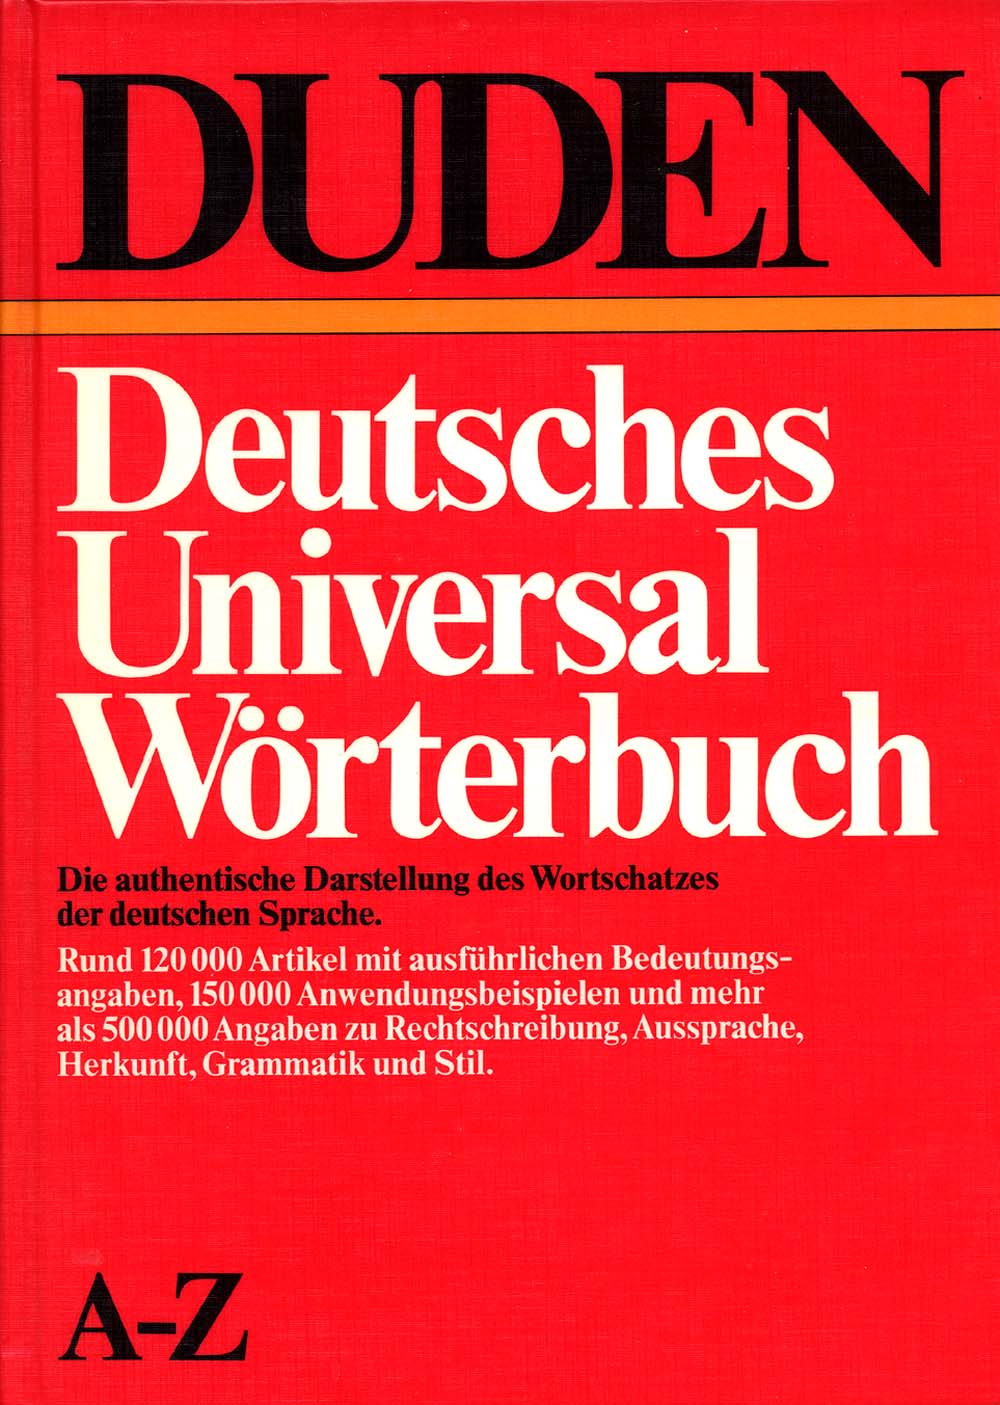 Duden-Wörterbuch.jpg